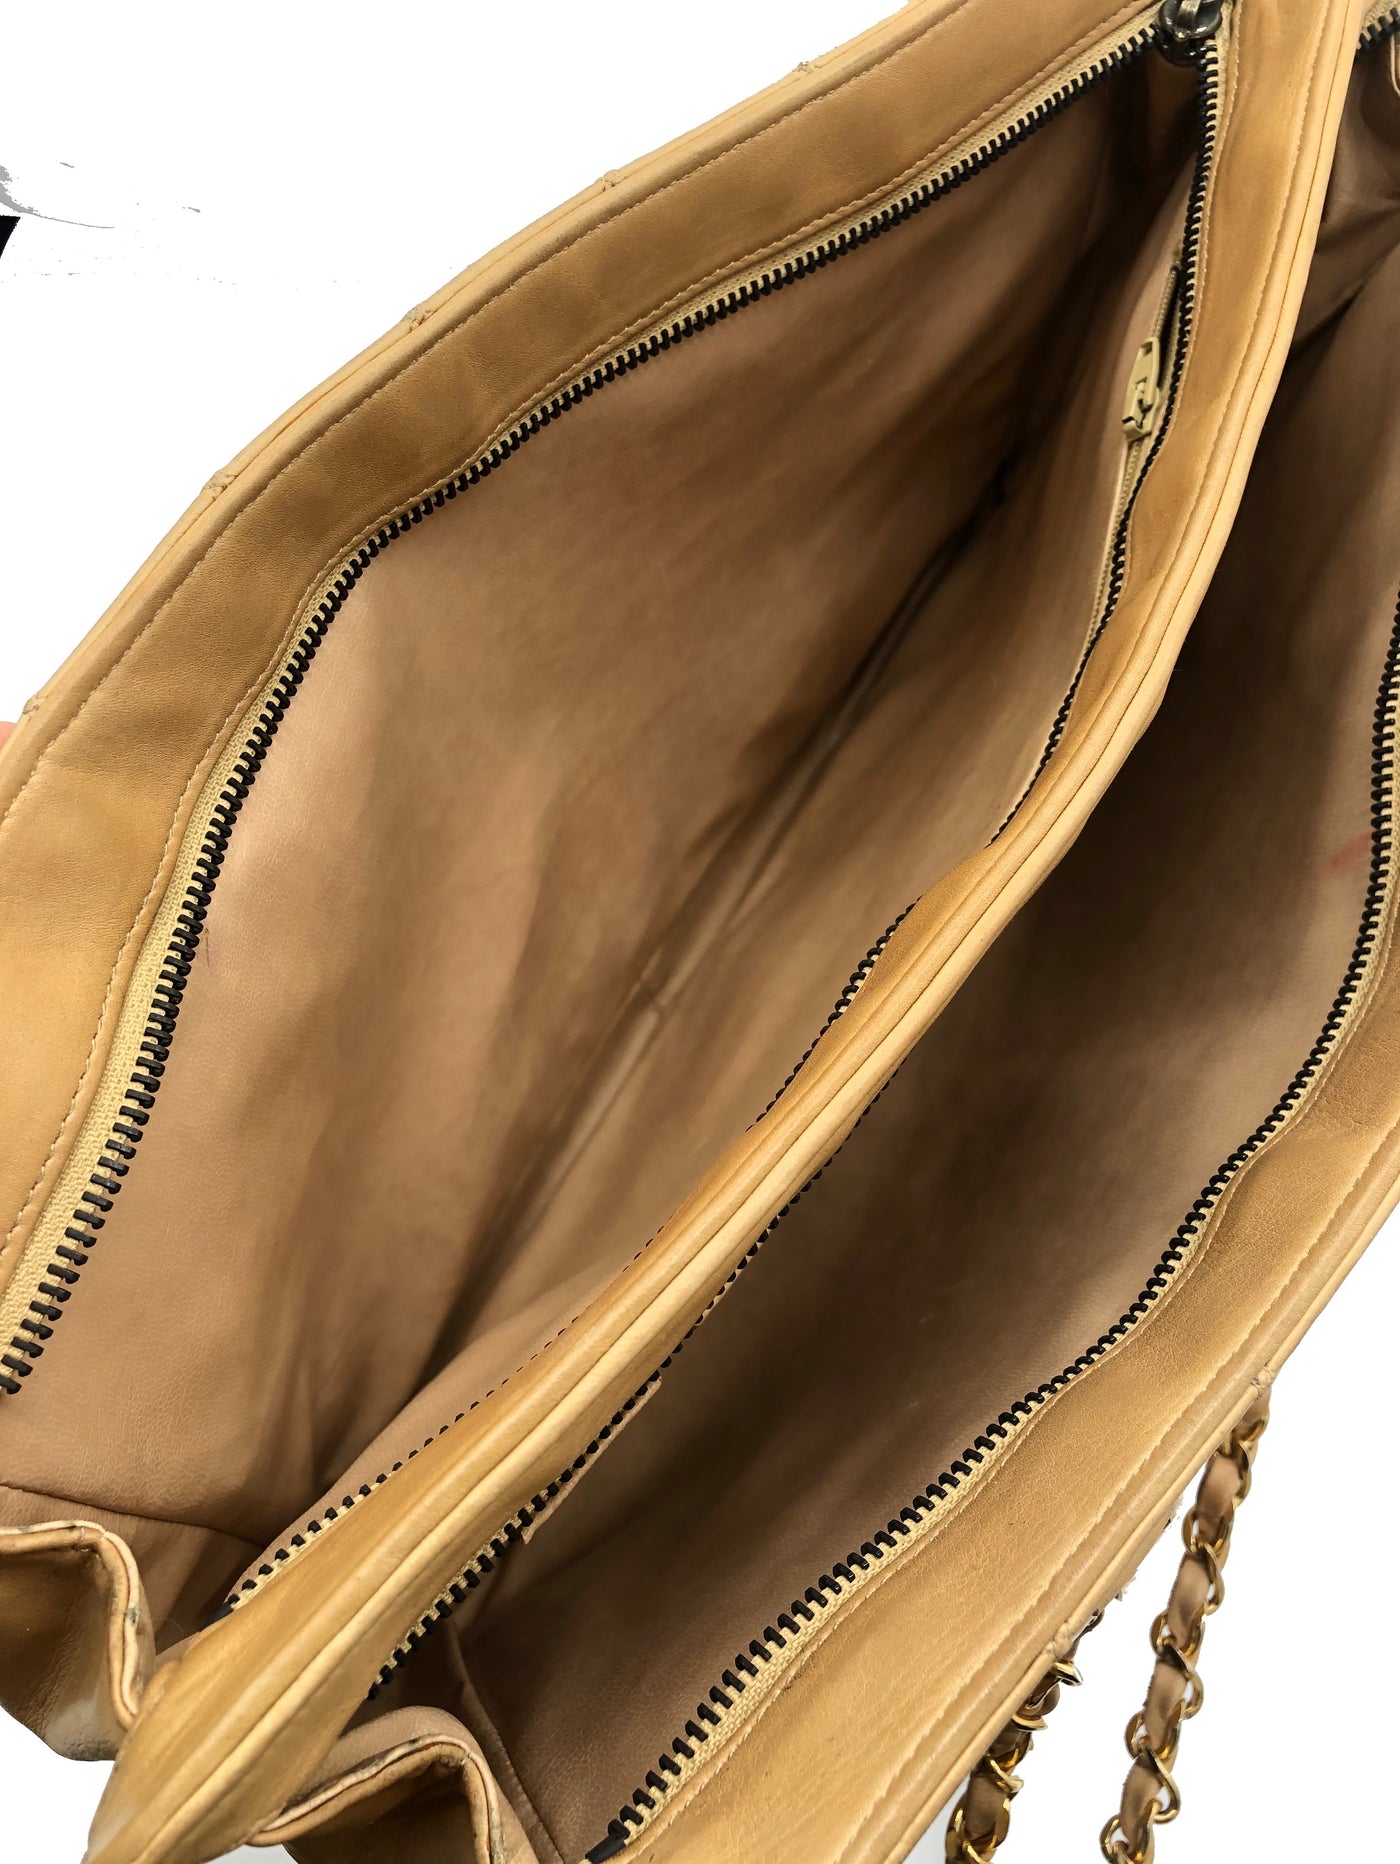 CHANEL vintage 1980’s beige shopper bag with gold hardware